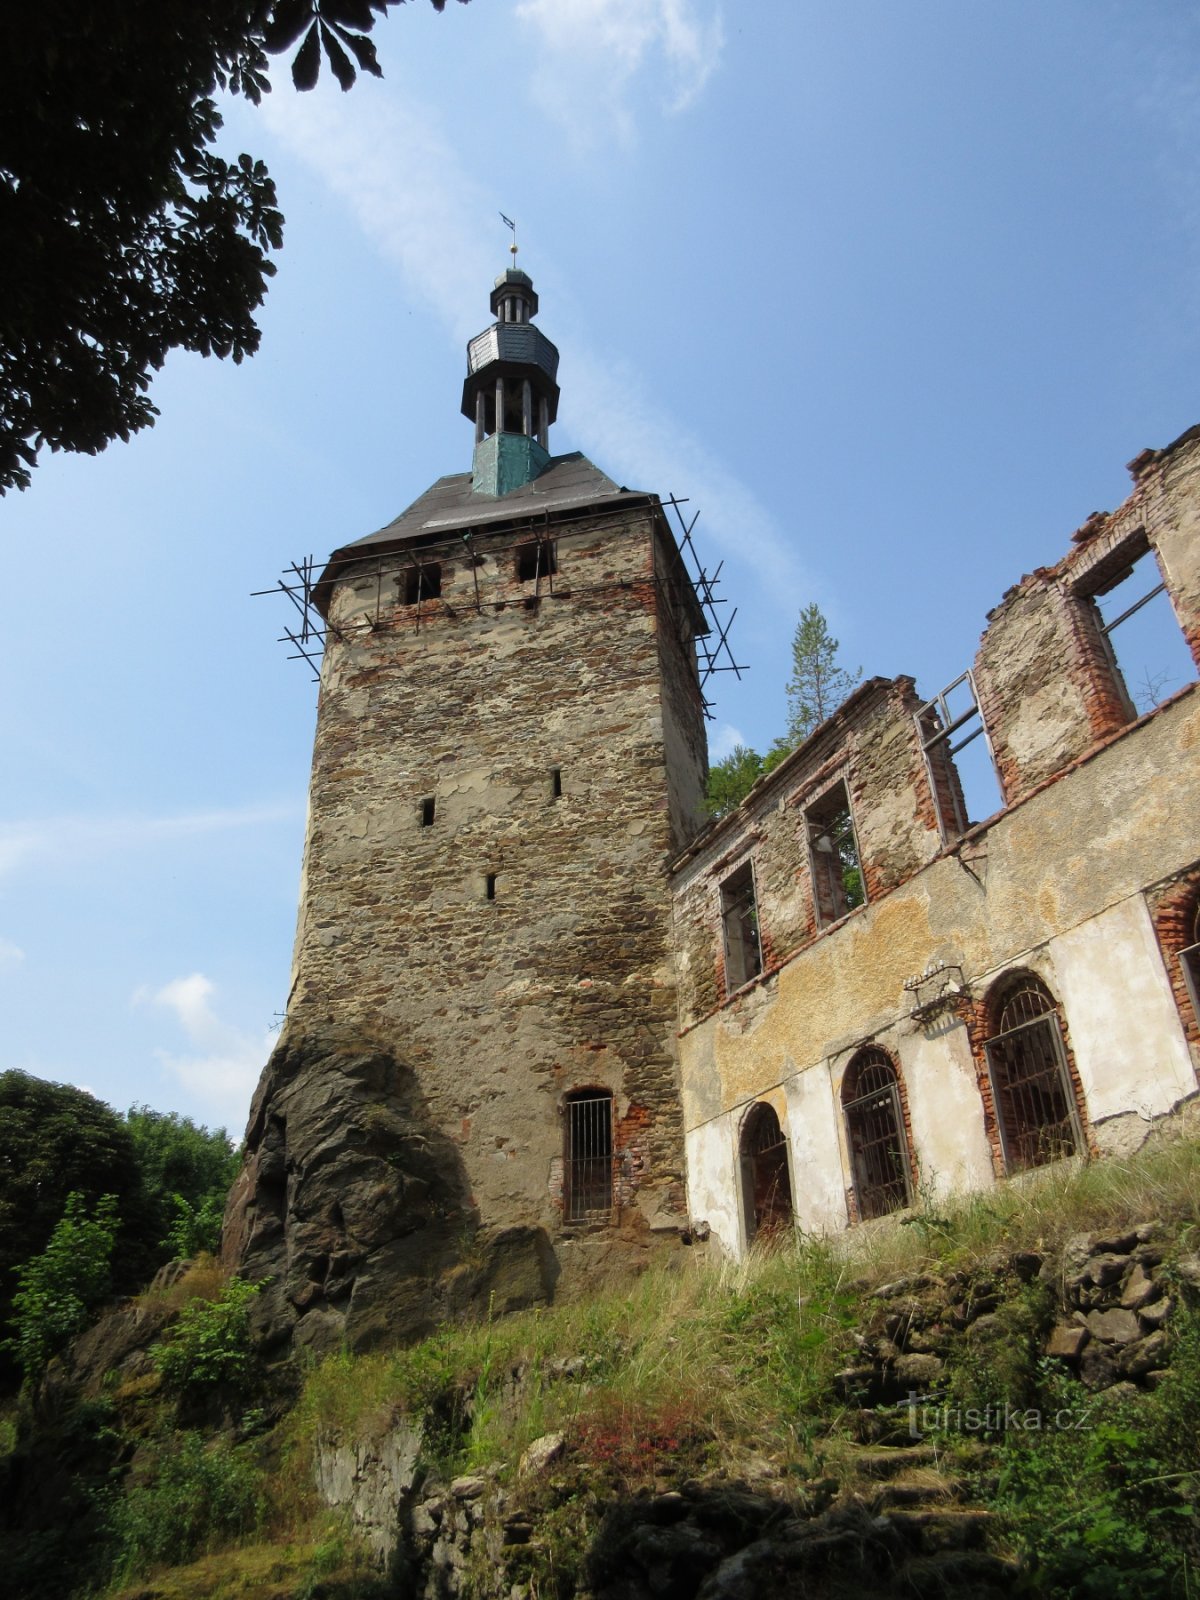 Josefov - Hřebeny, as ruínas do Castelo de Hartenberg